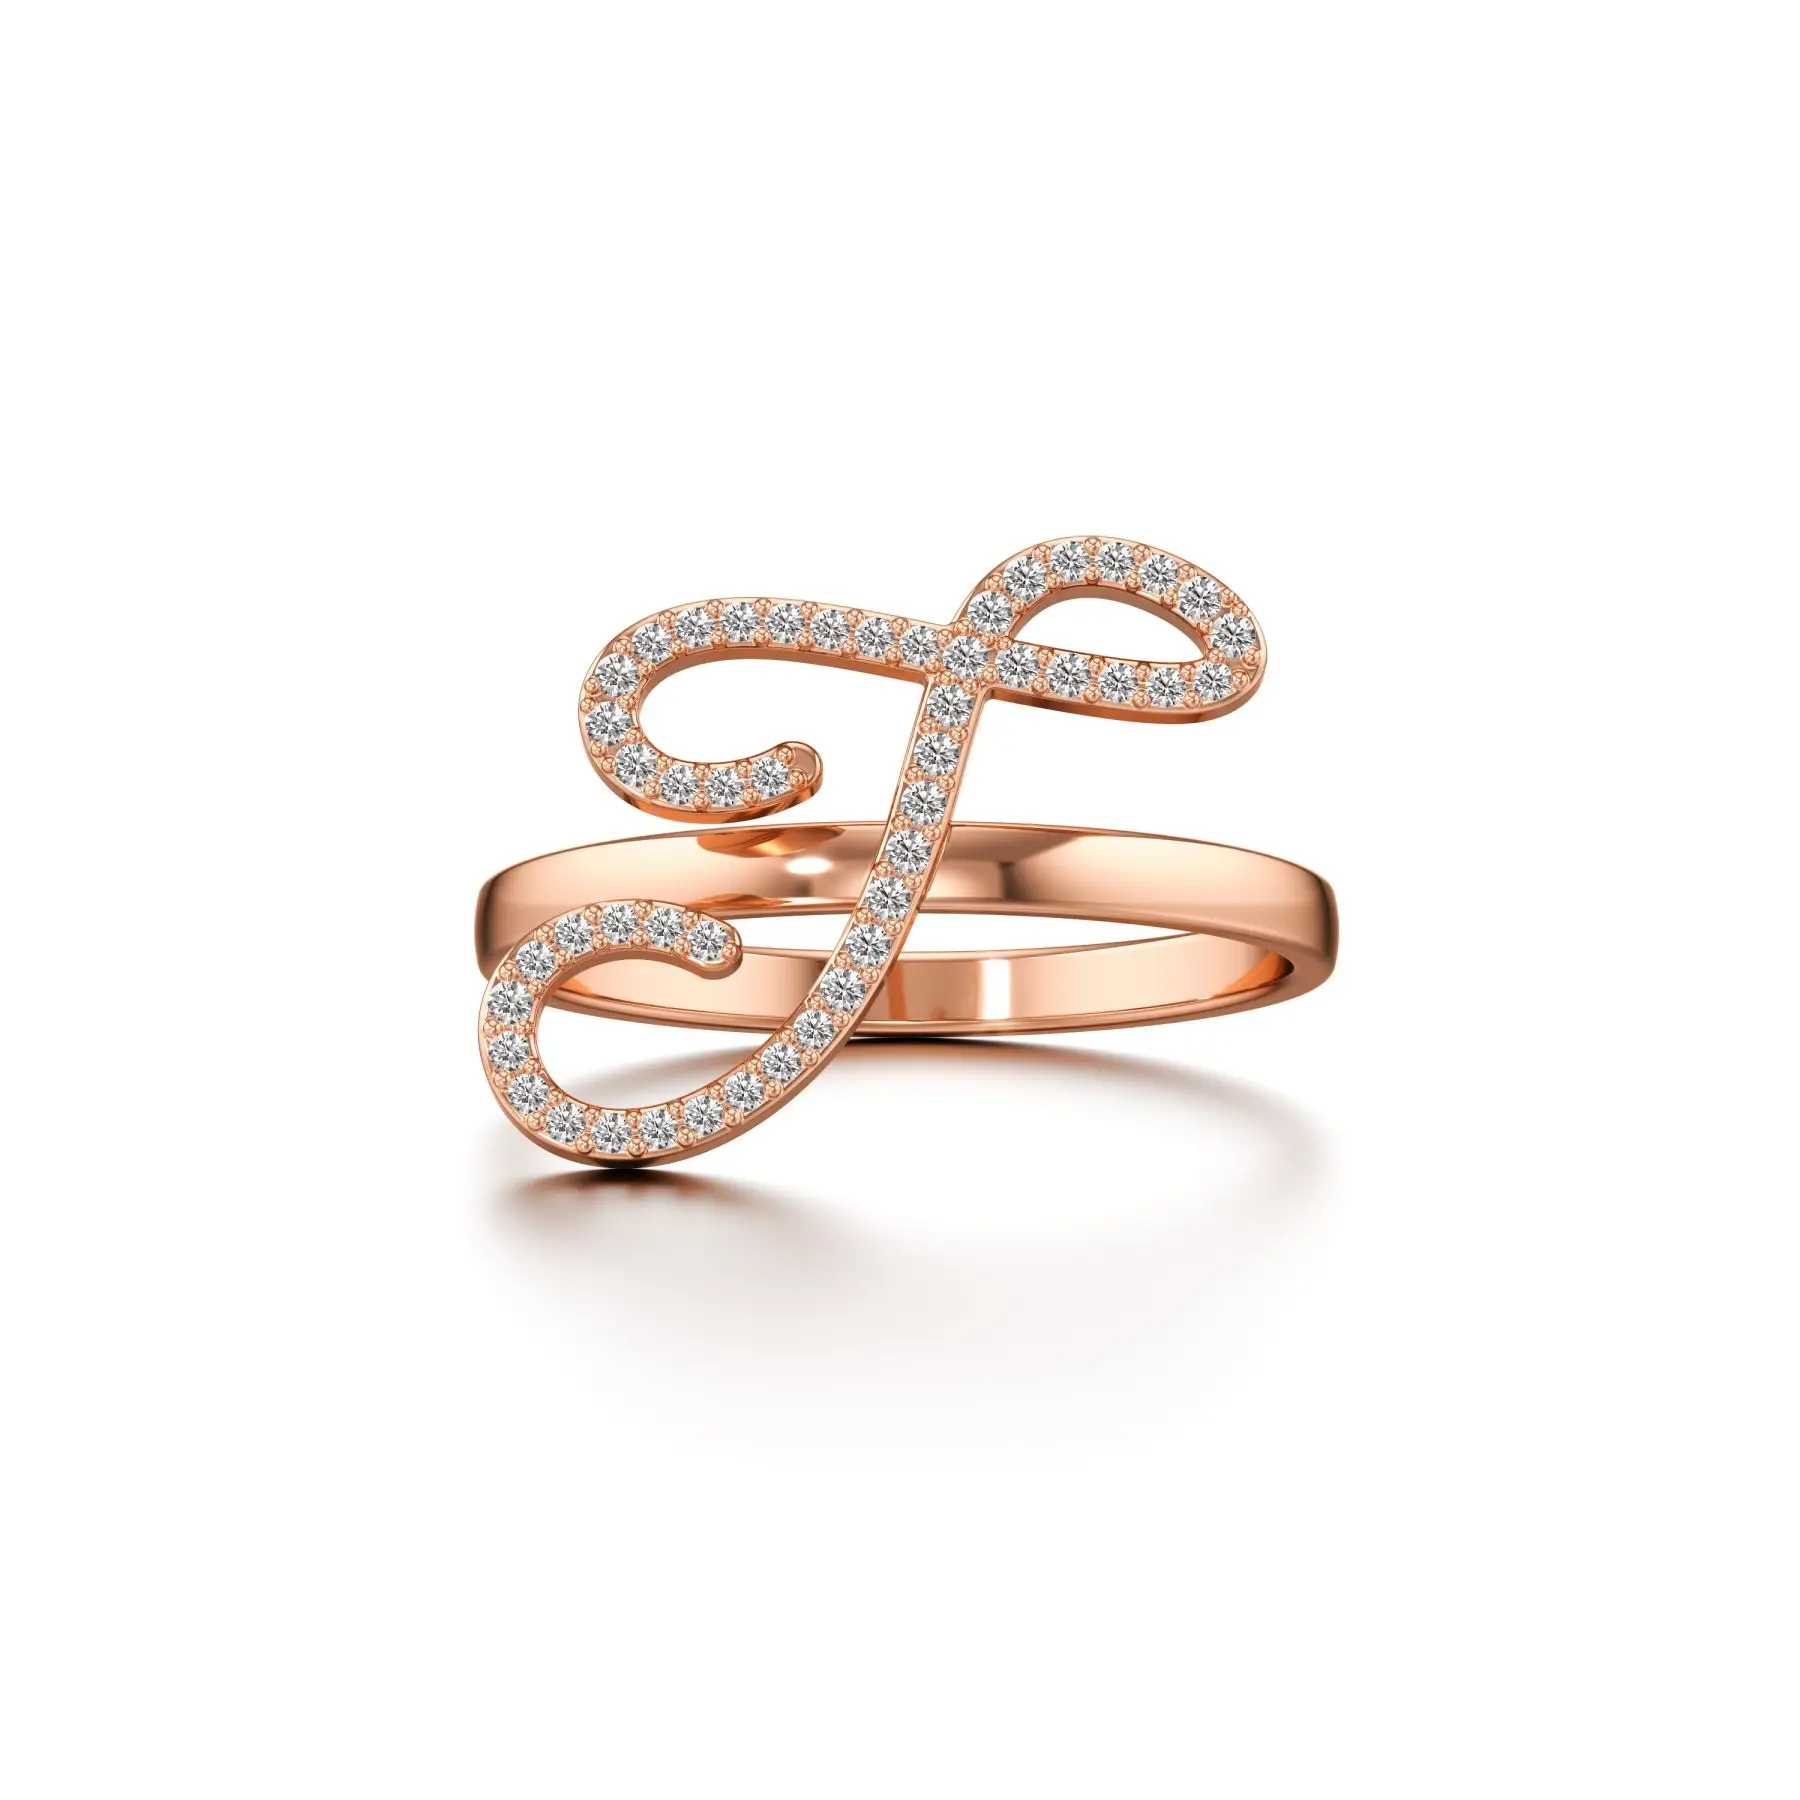 Swanky J Diamond Ring in Rose 10k Gold